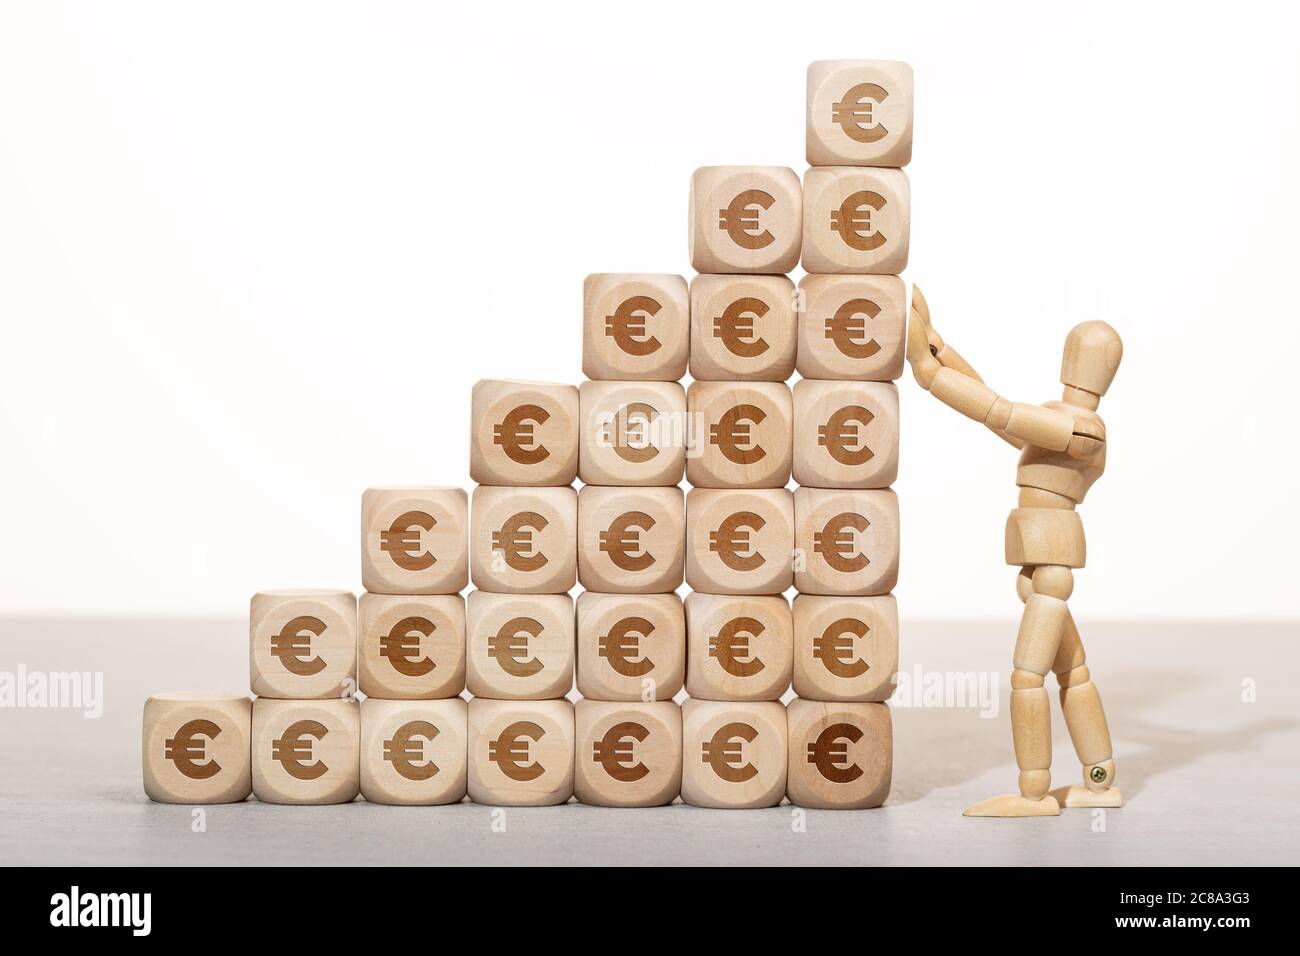 Concept de croissance, de richesse ou de richesse. Mannequin en bois tenant une pile de blocs de bois empilés avec le symbole de l'euro Banque D'Images